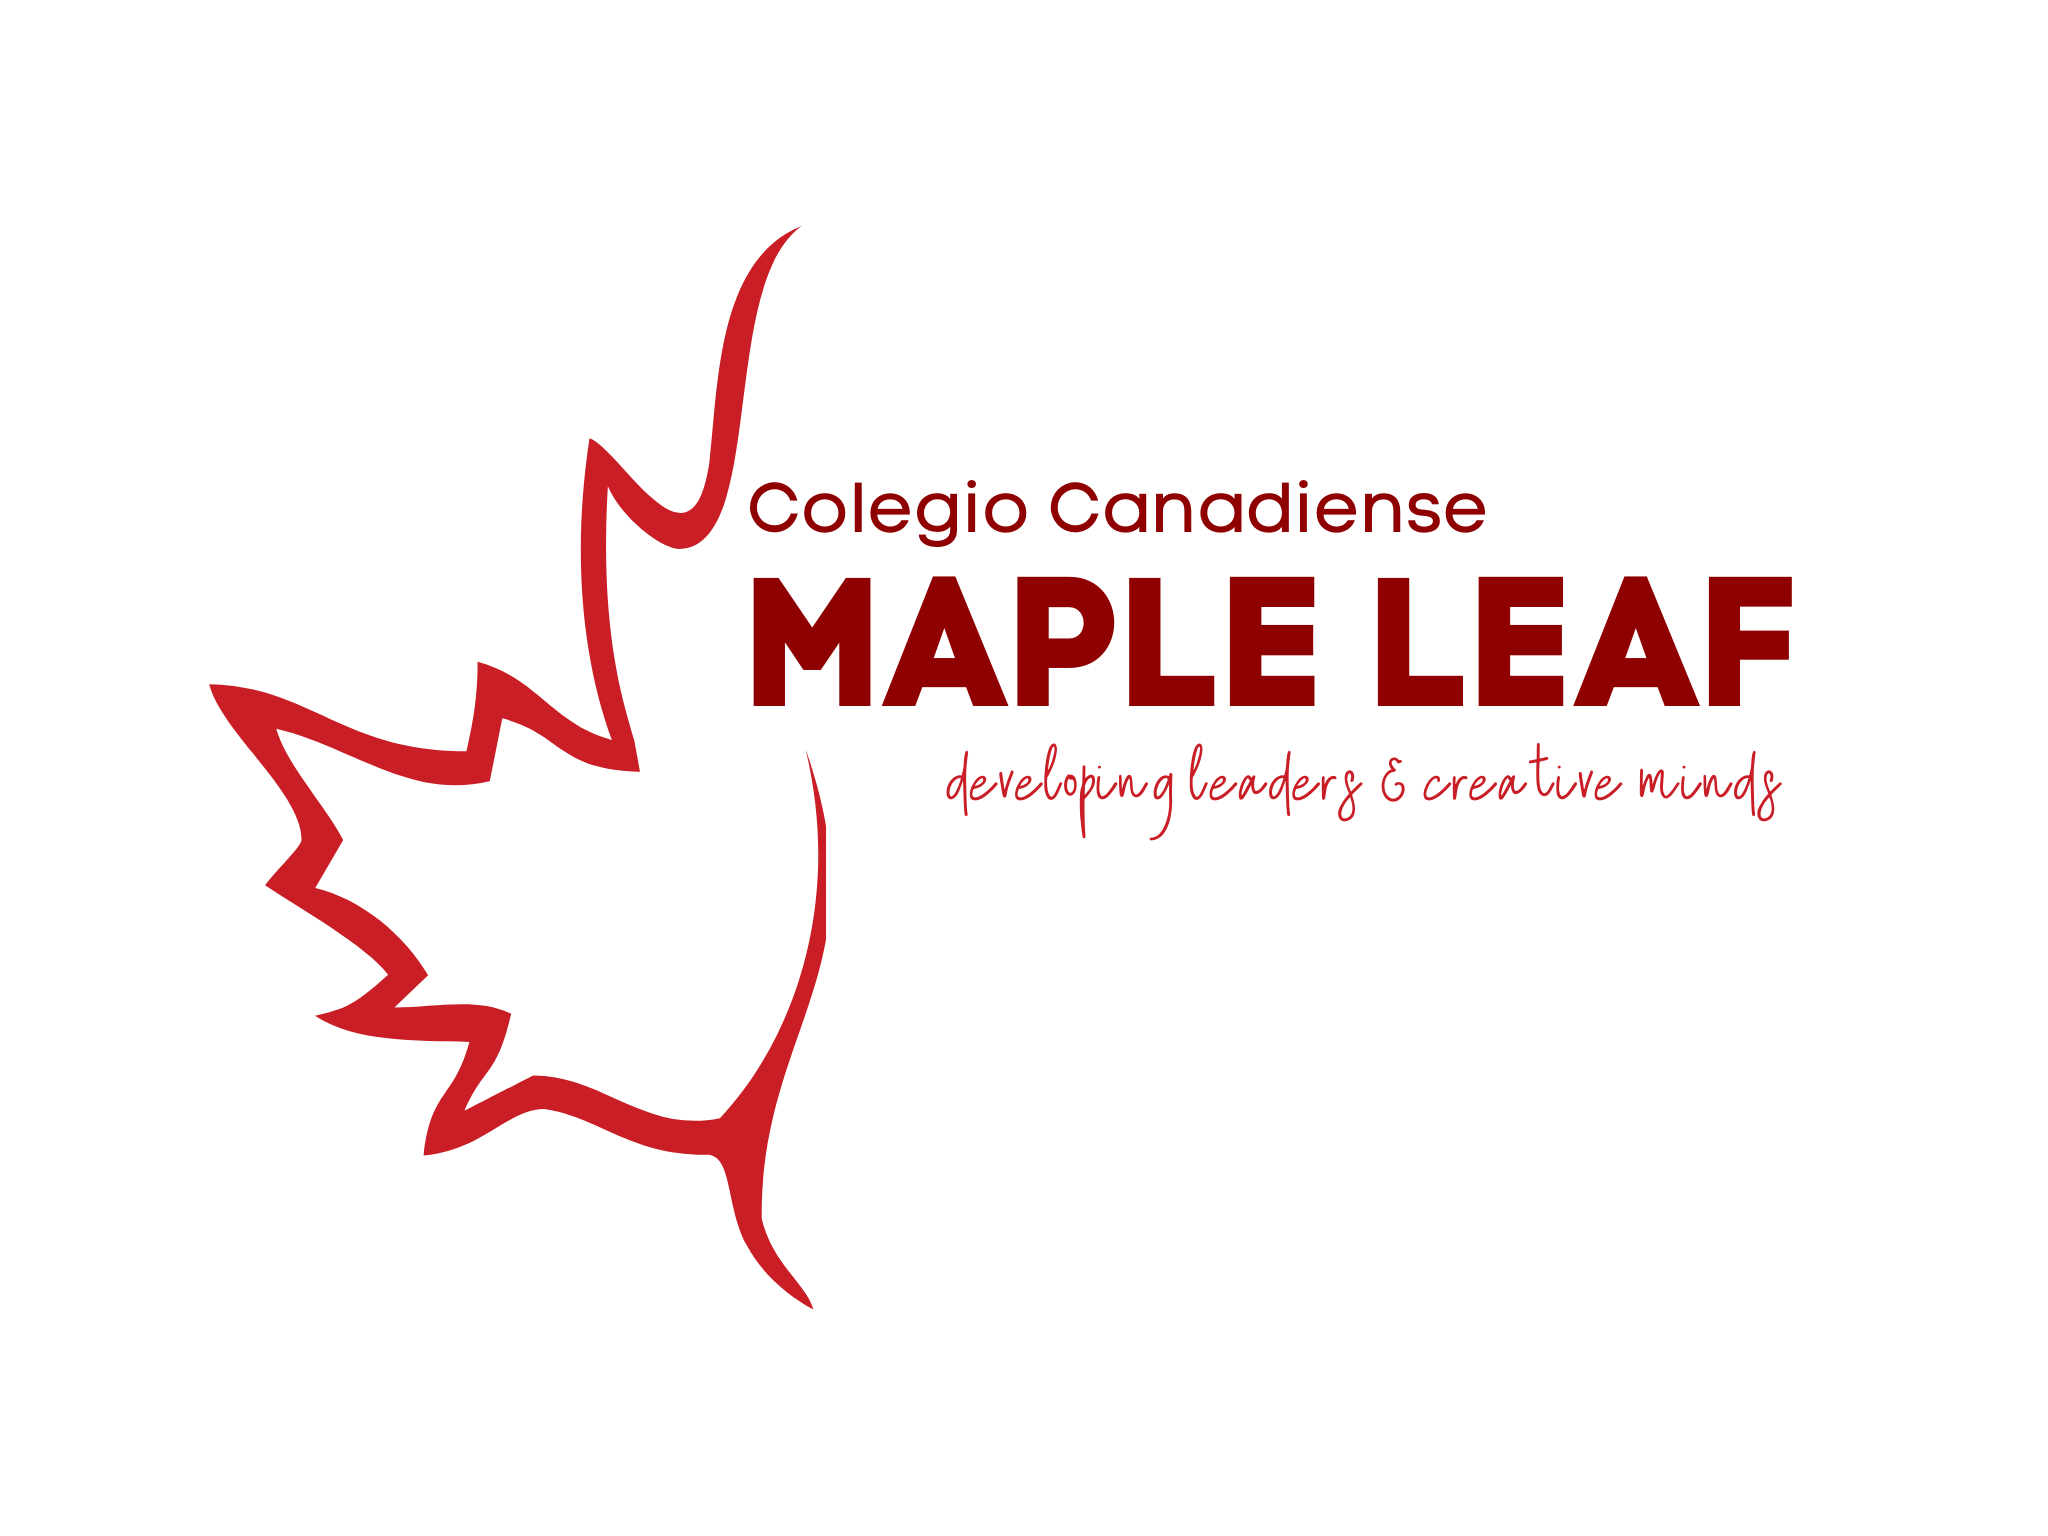 Colegio Canadiense Maple Leaf